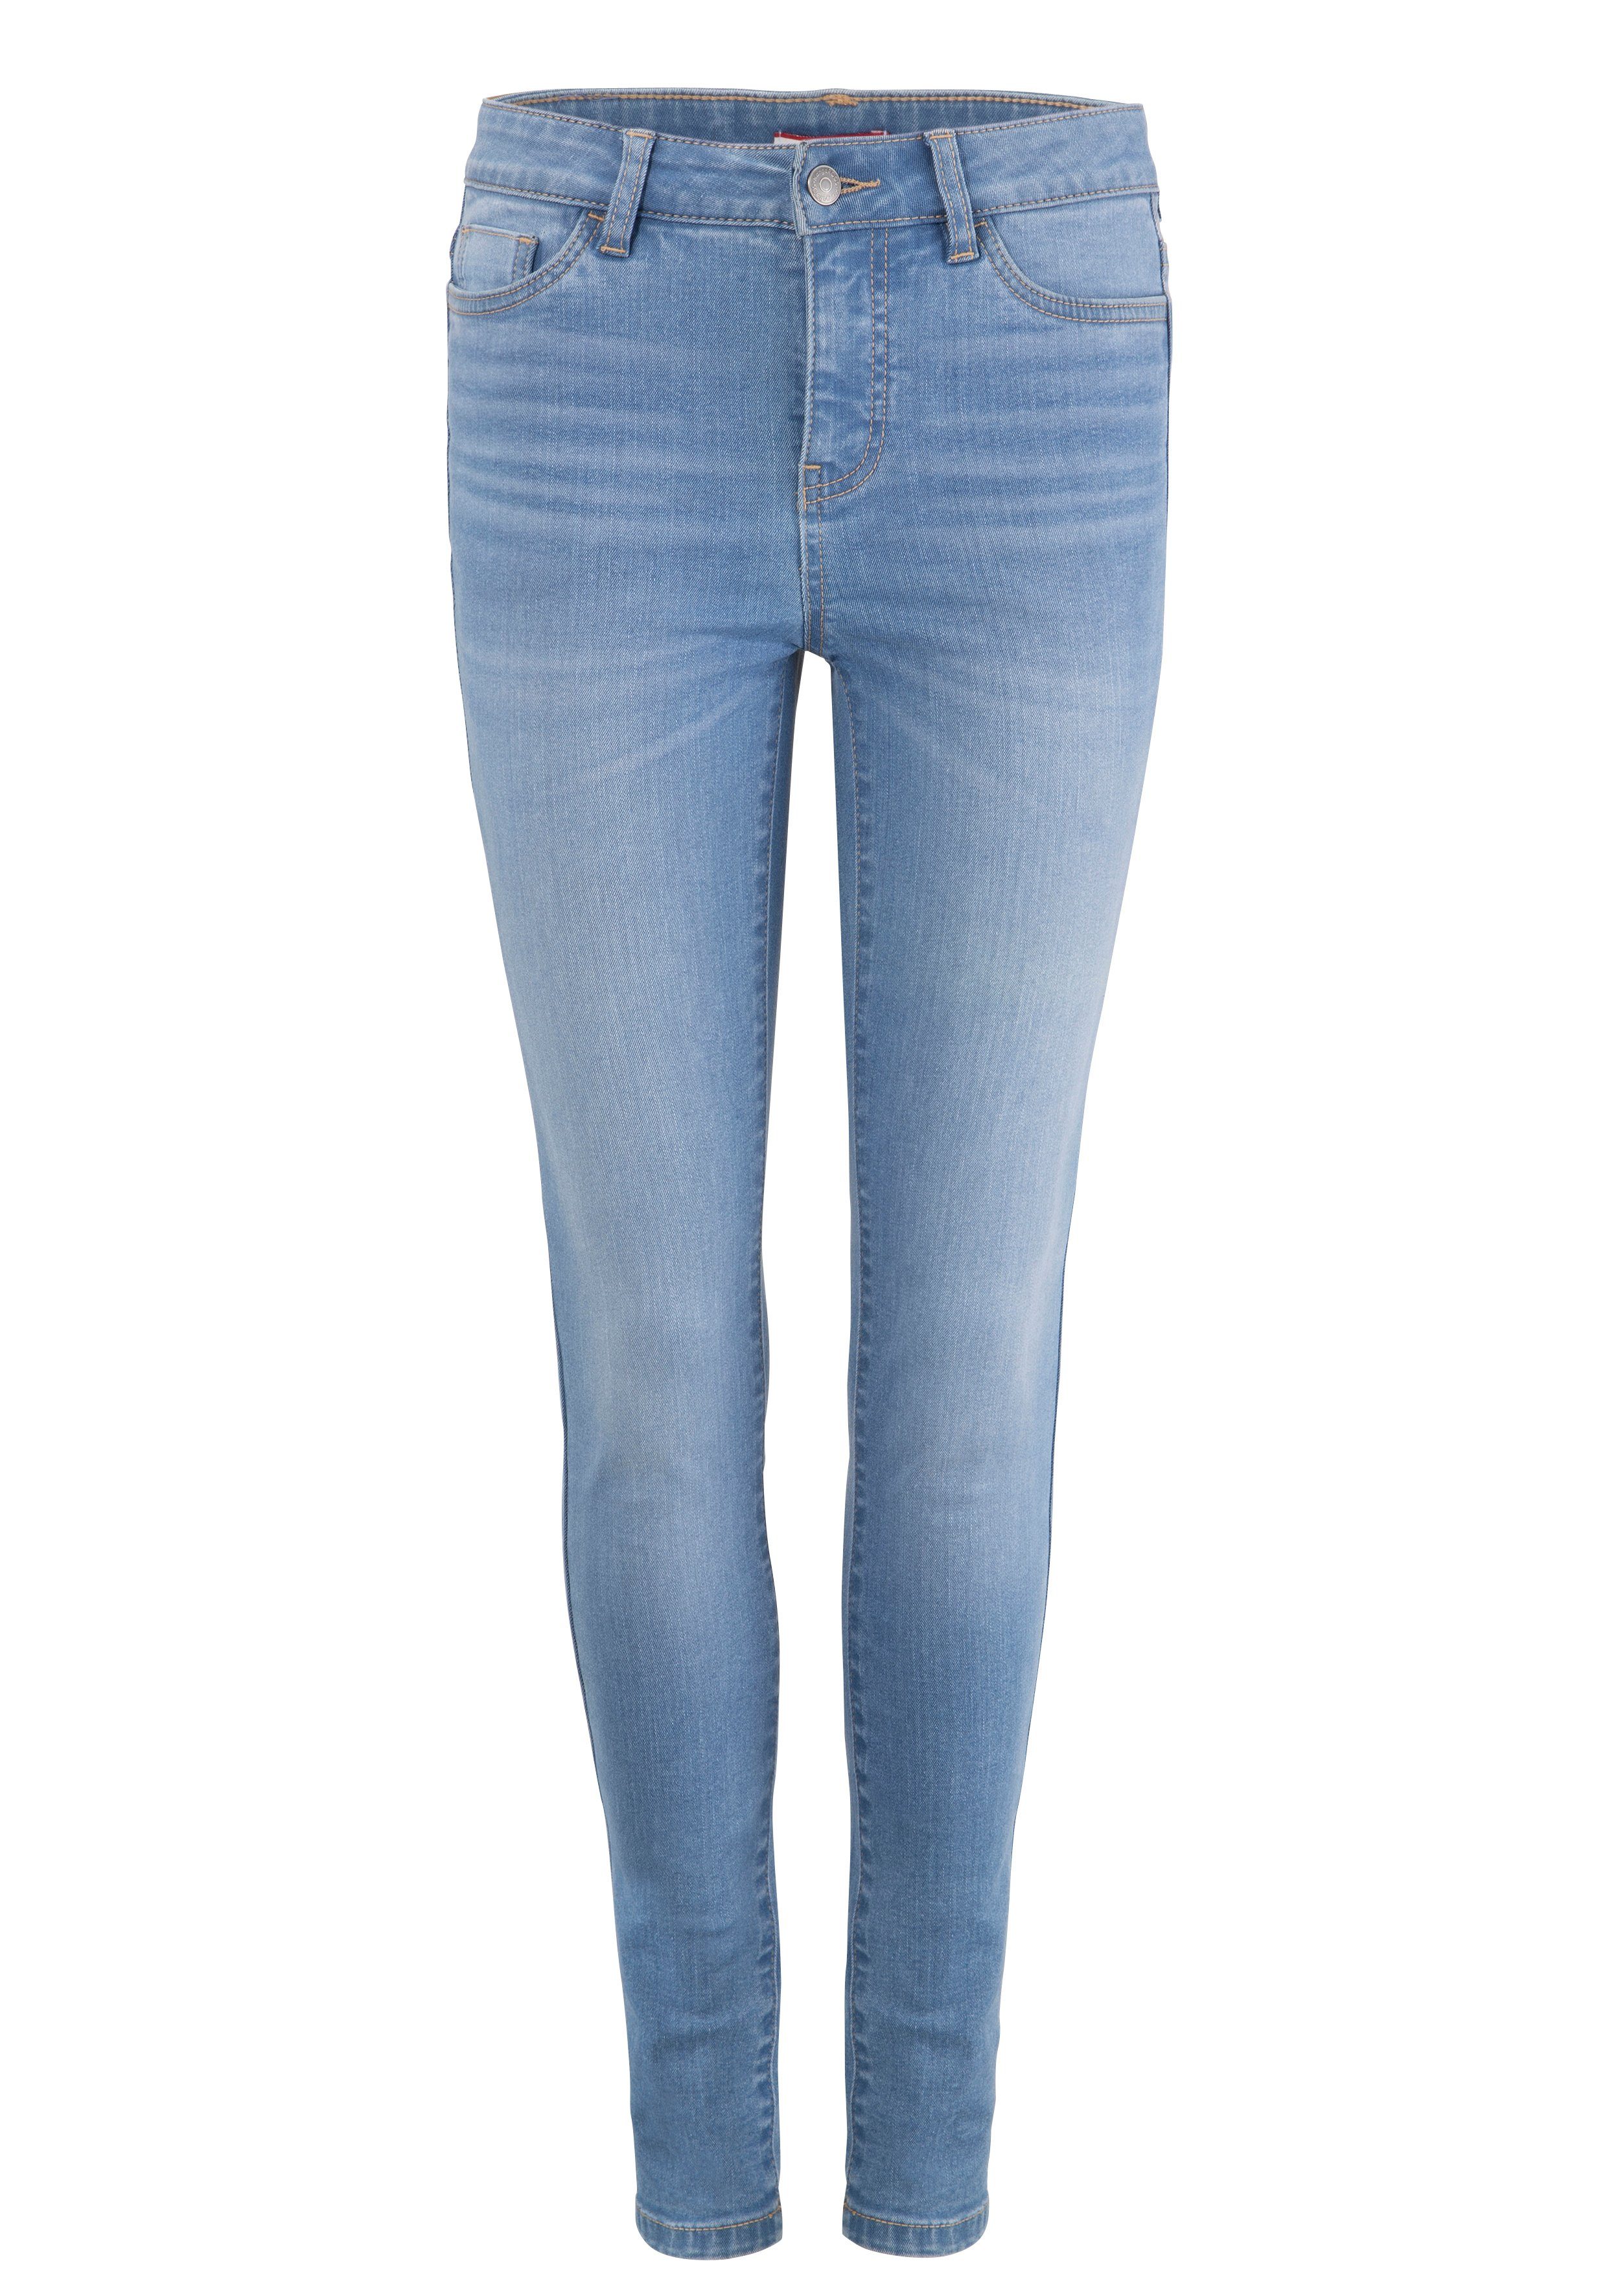 SUPER KangaROOS light-blue-used mit used-Effekt HIGH RISE 5-Pocket-Jeans SKINNY